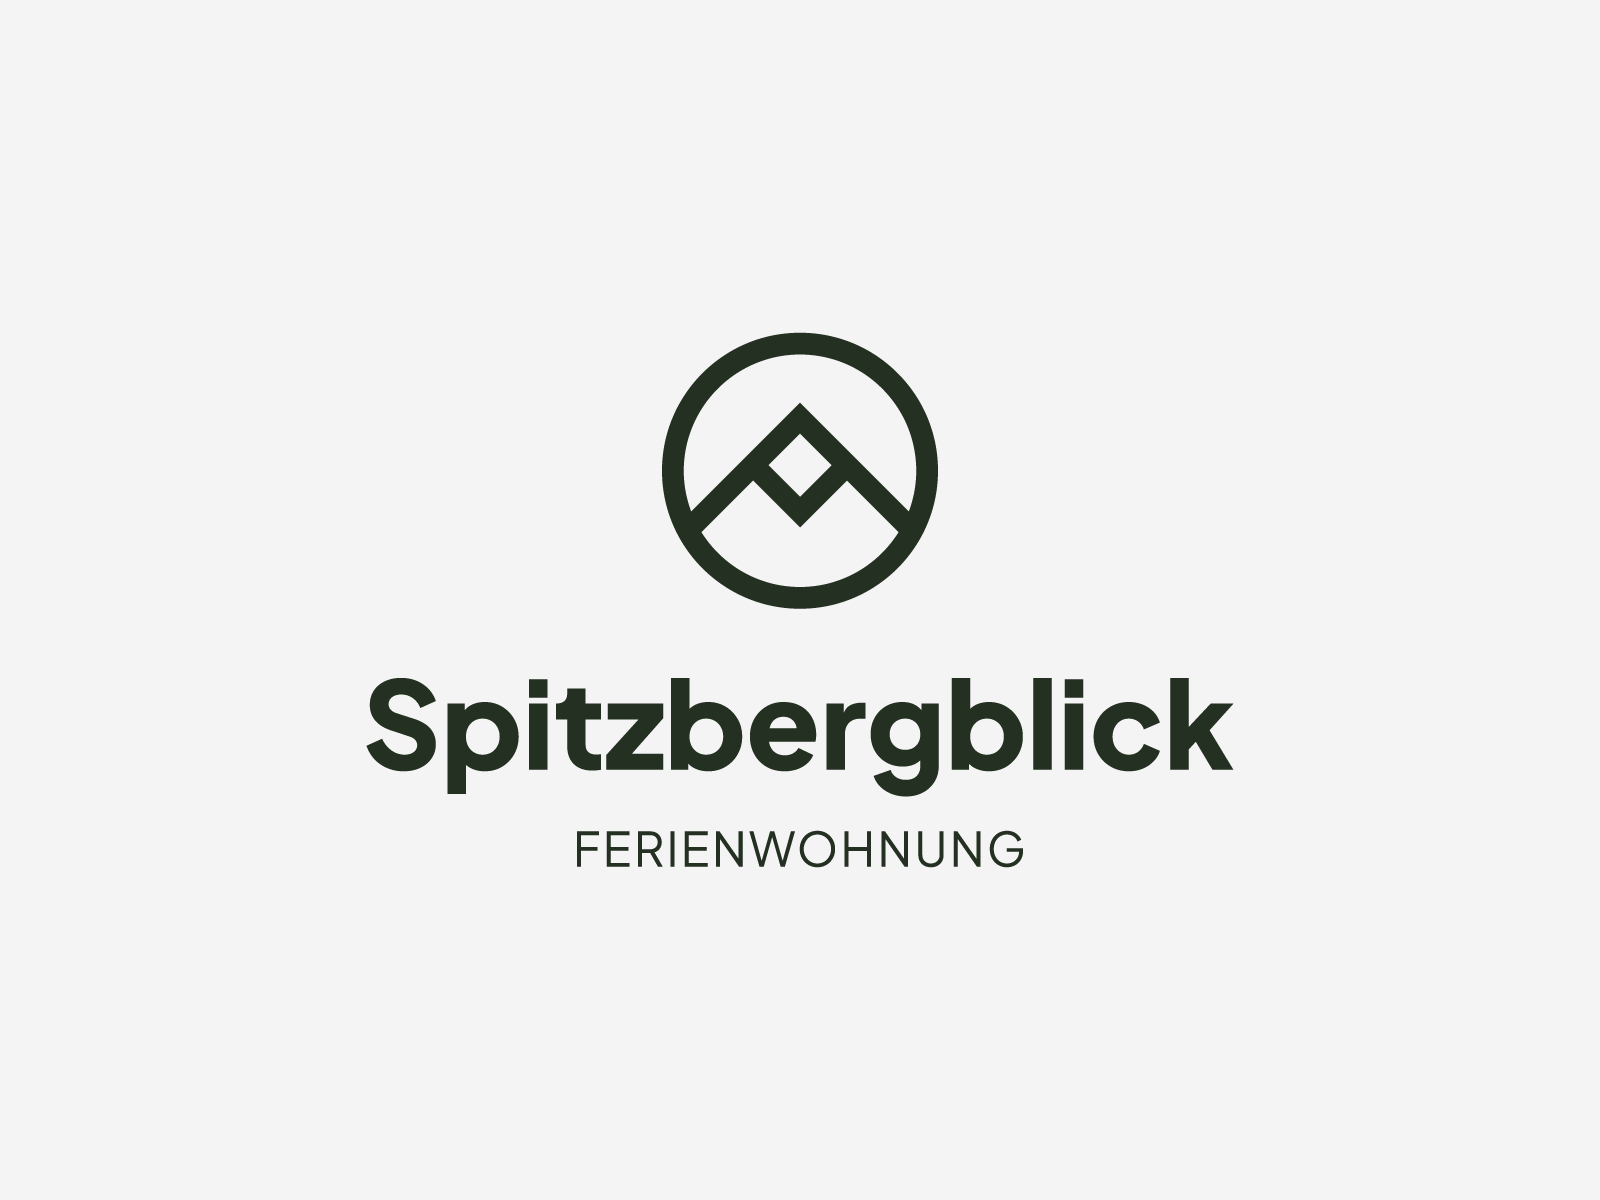 lwm-spitzbergblick-1